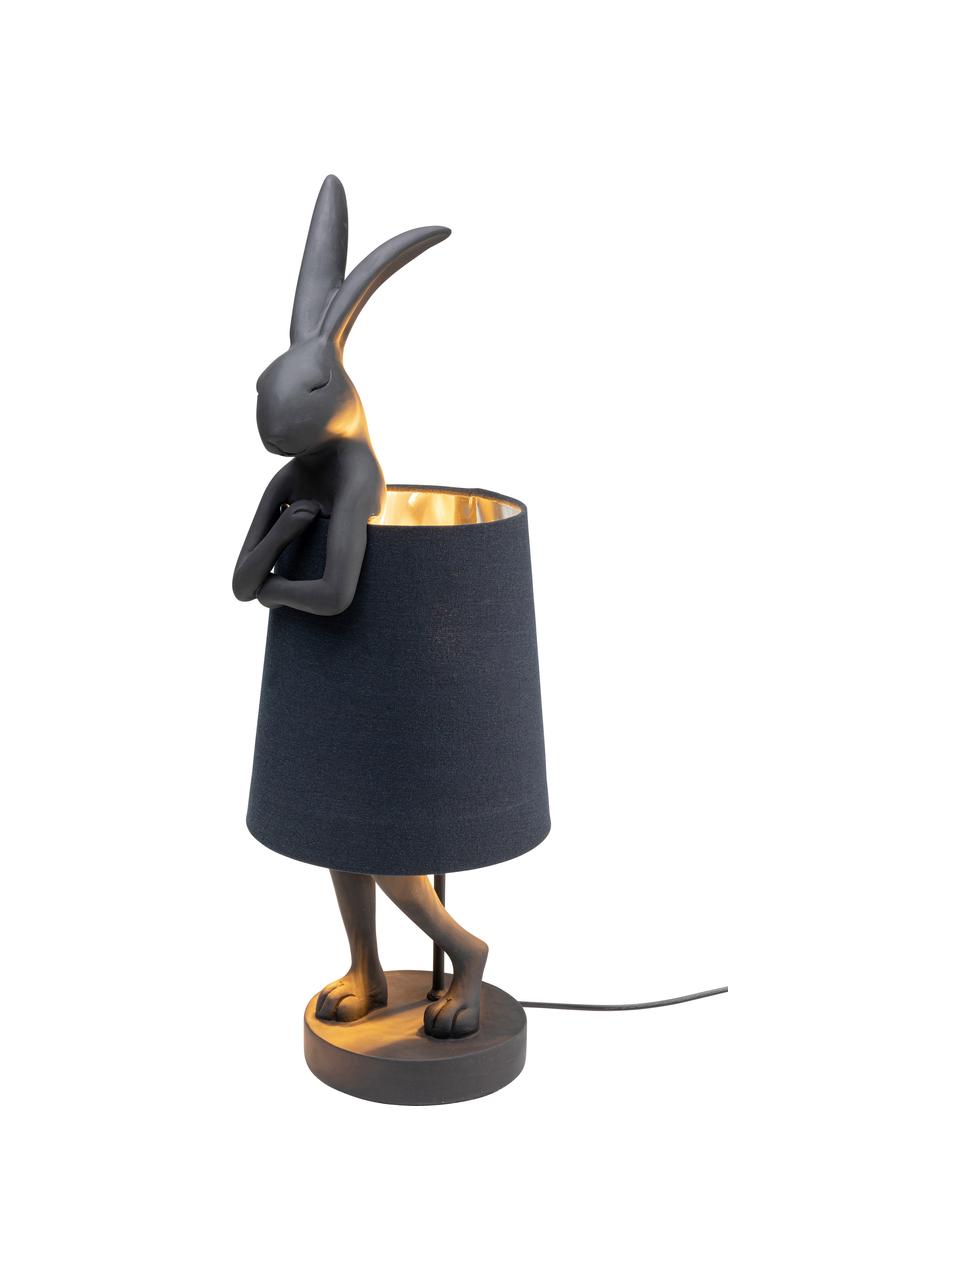 Große Design Tischlampe Rabbit, Lampenschirm: Leinen, Lampenfuß: Kunststoff, Stange: Stahl, pulverbeschichtet, Schwarz, Ø 23 x H 68 cm